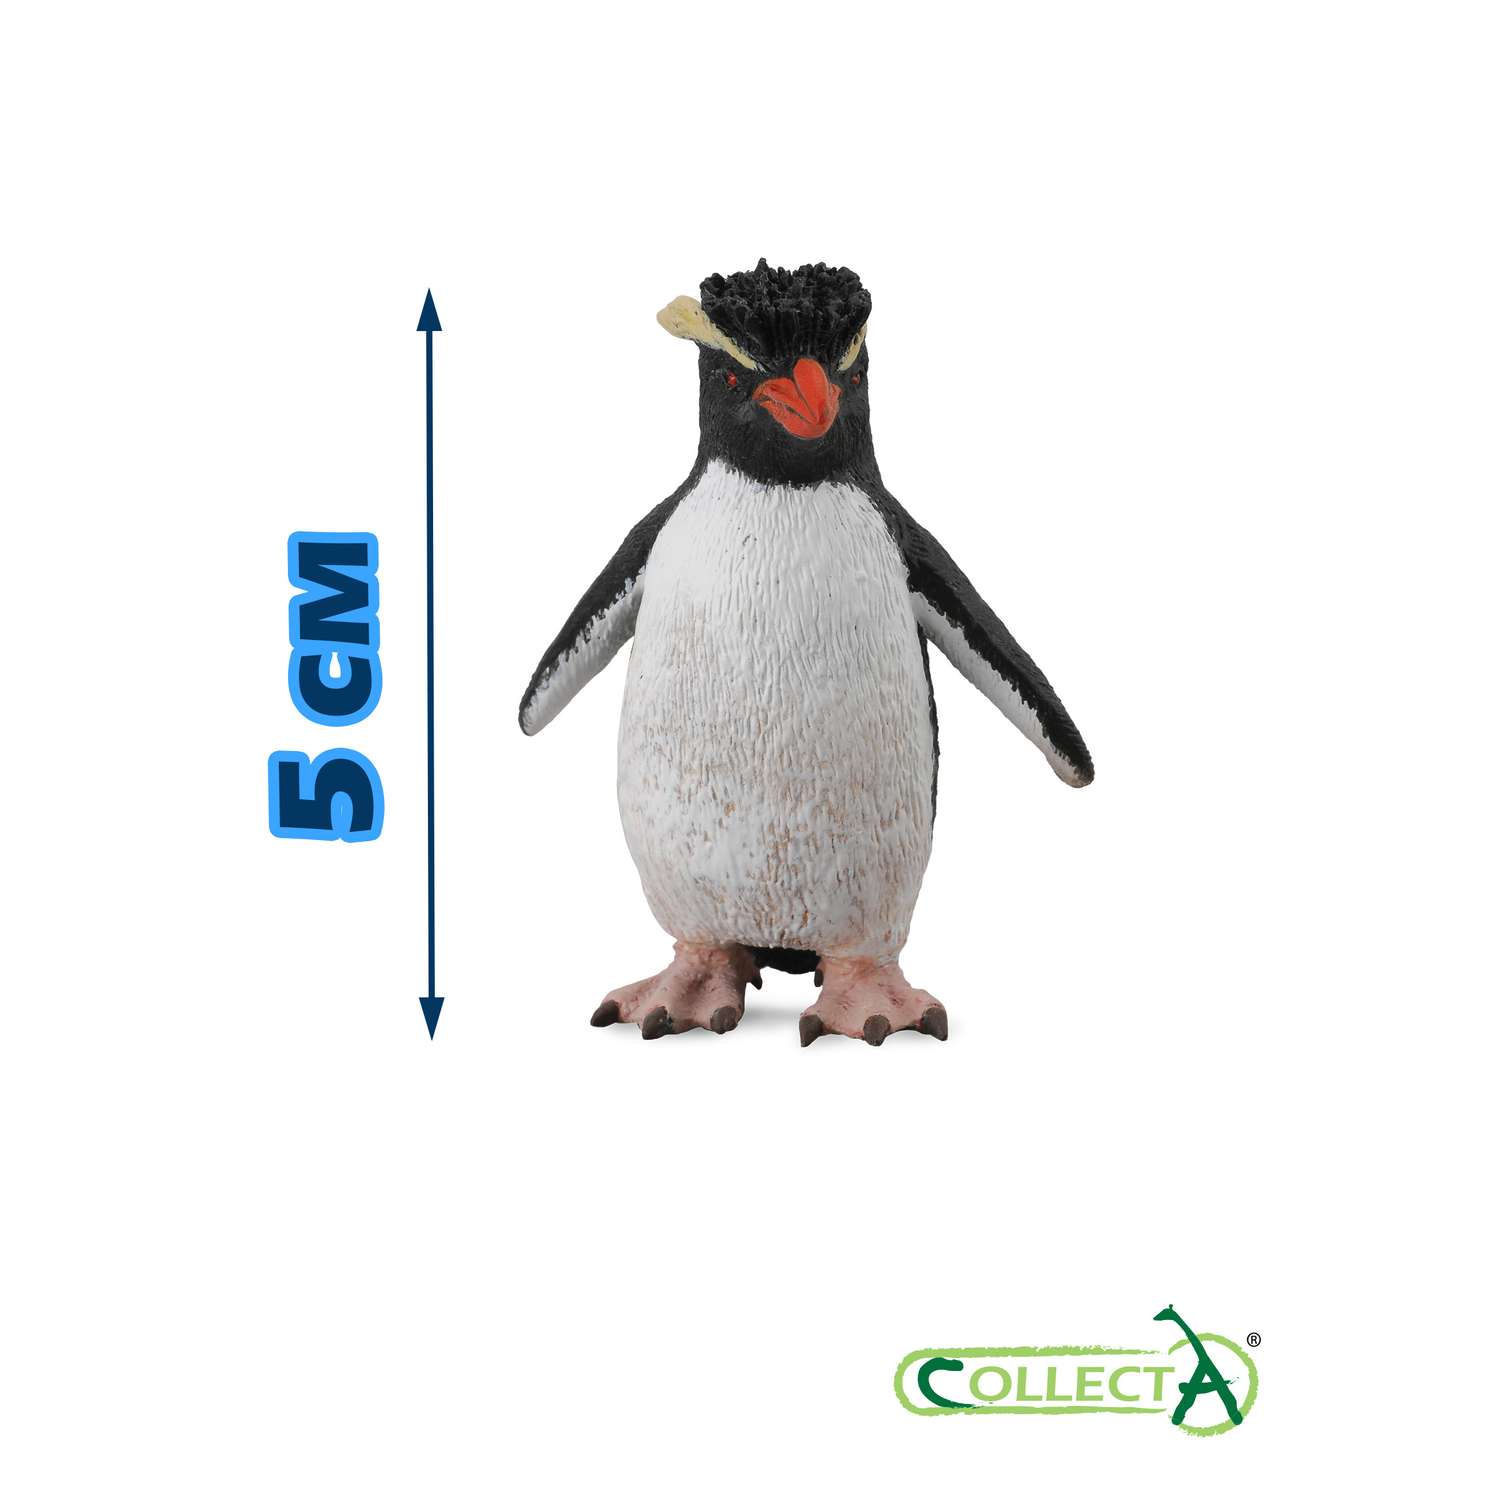 Игрушка Collecta Пингвин Рокхоппера фигурка животного - фото 2